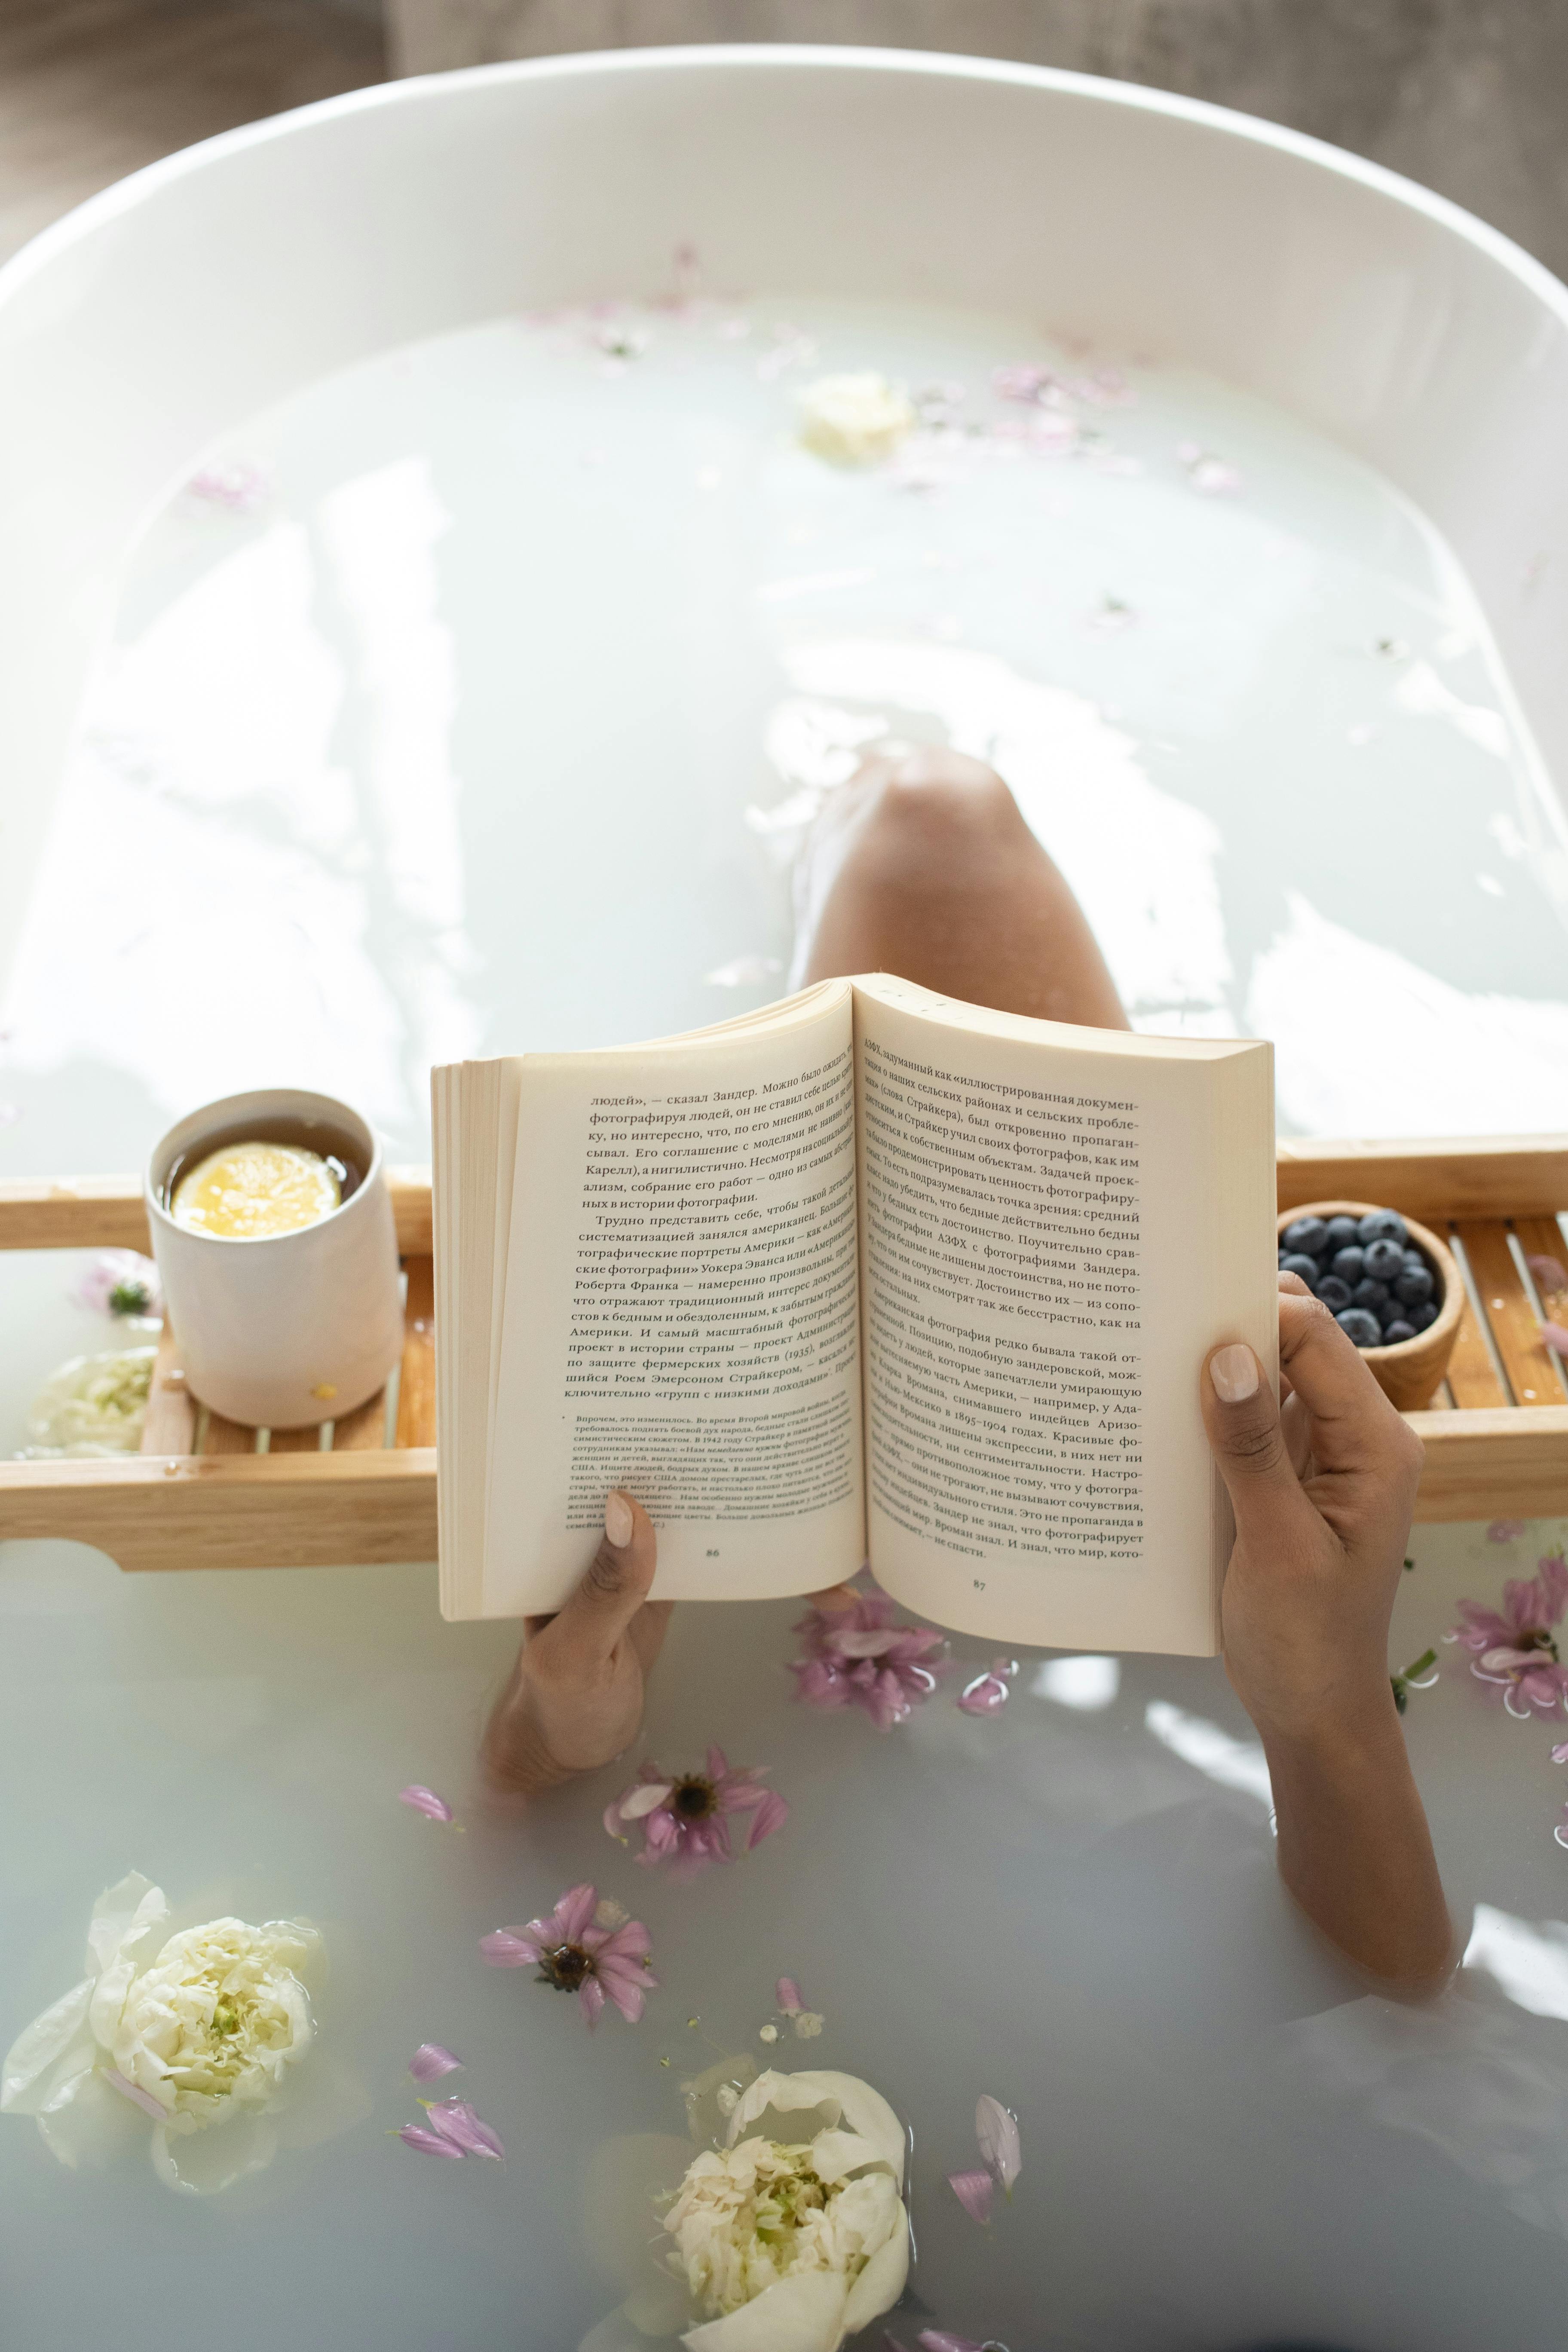 Une femme lisant un livre dans une baignoire pendant une cure thermale | Source : Pexels